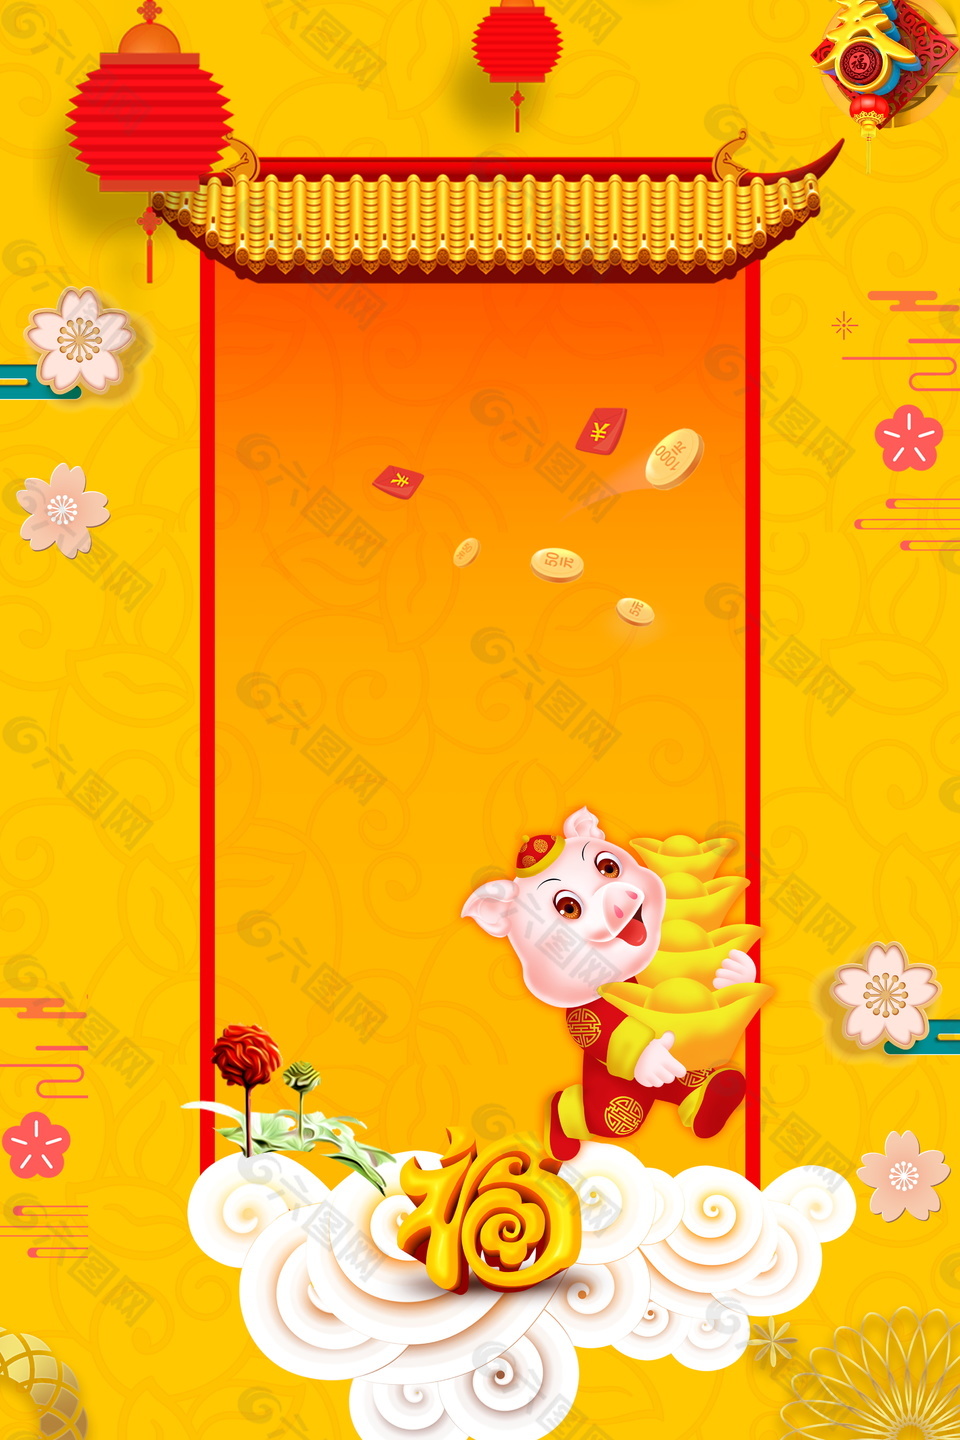 金猪贺岁中国风海报背景设计